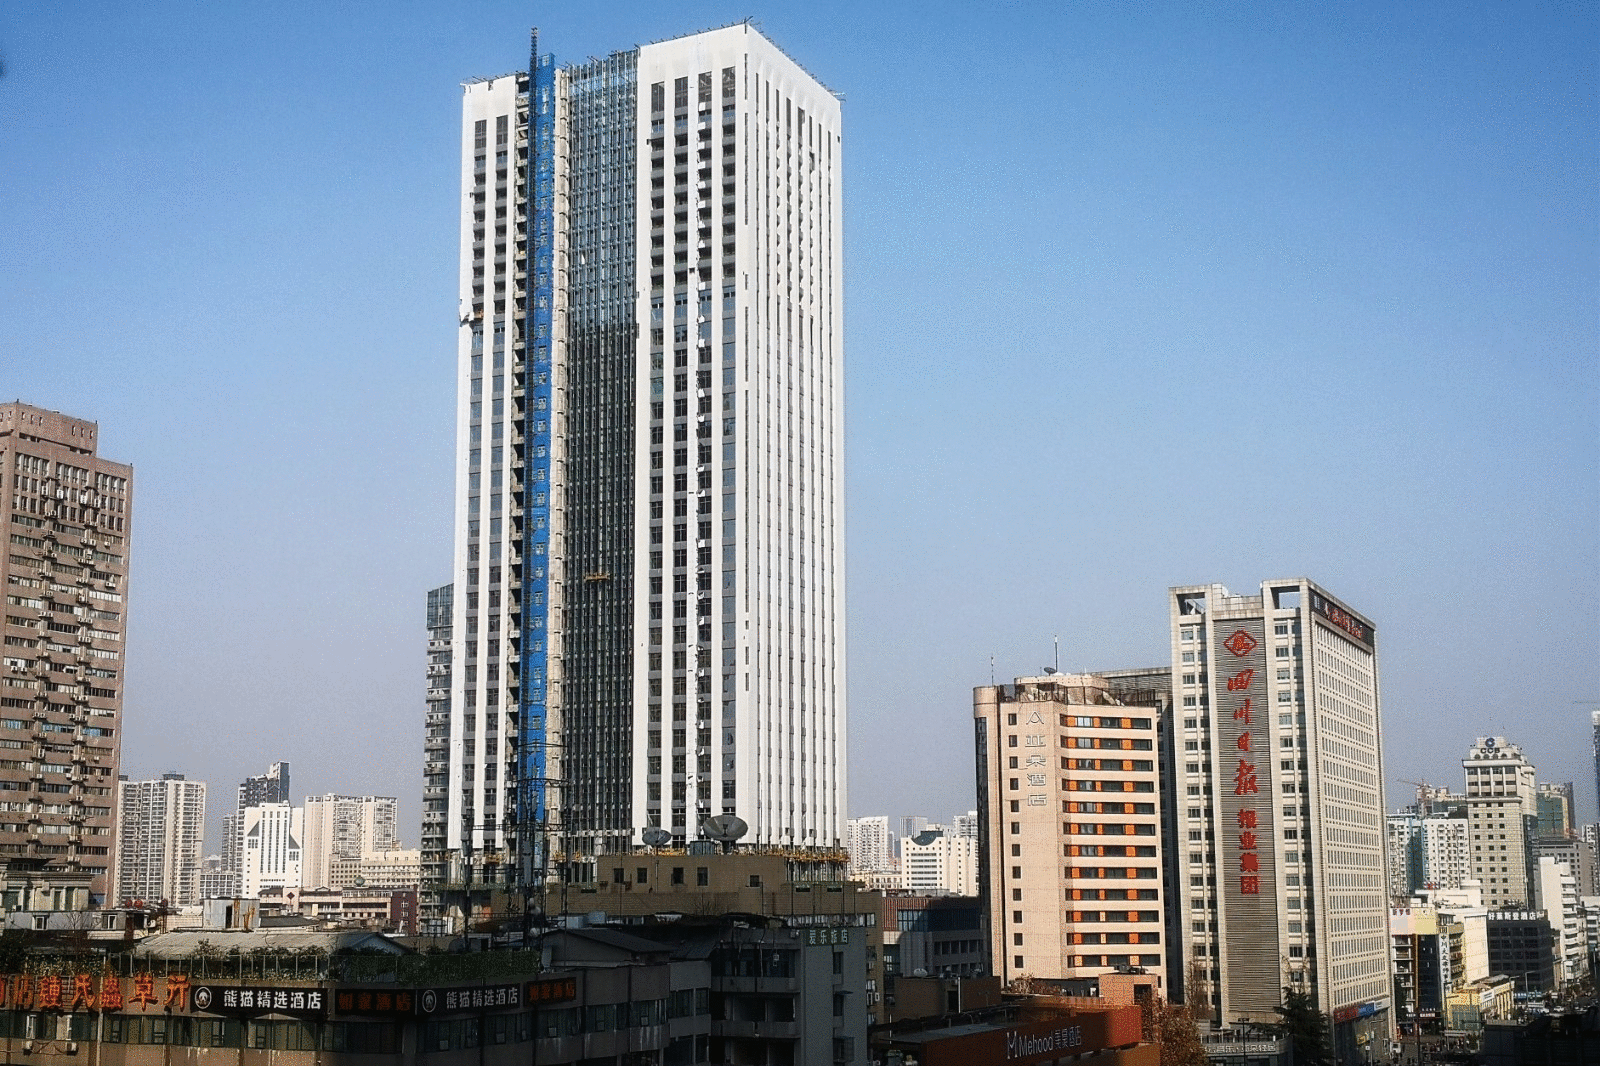 杭州上城红星文化大厦图片